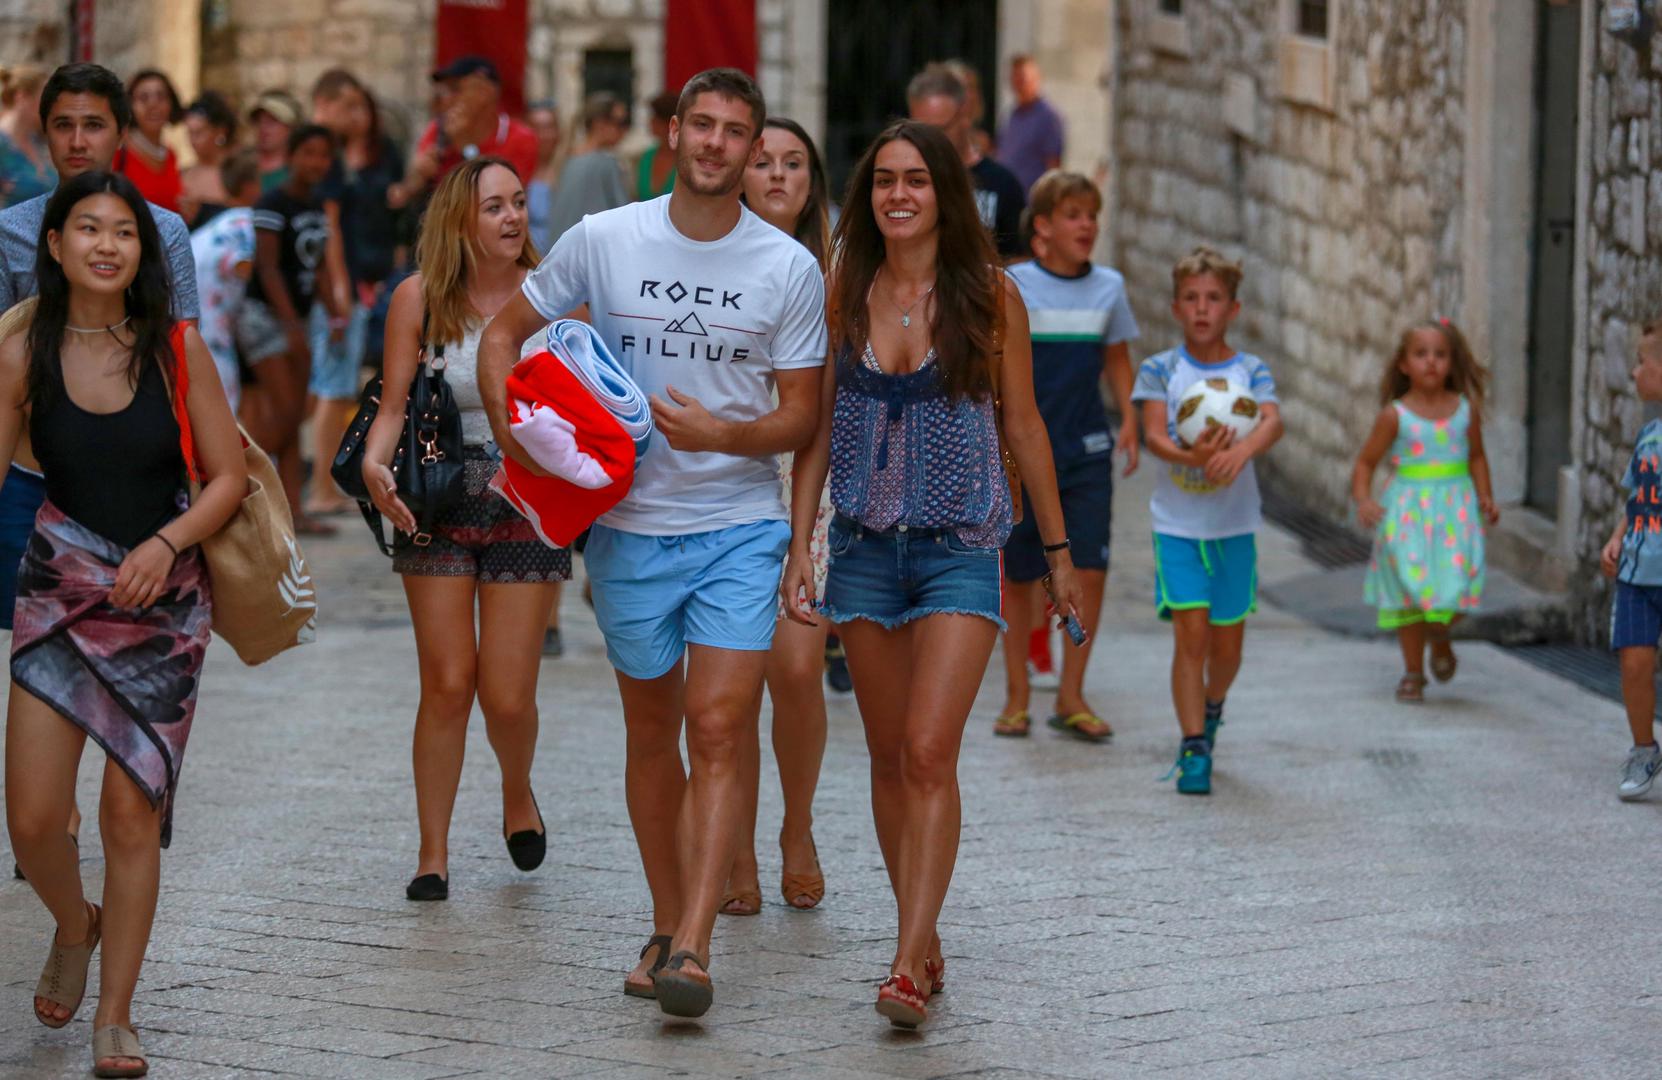 Hrvatski reprezentativac sada je na zasluženom odmoru koji će prije povratka u Hoffenheim provesti s djevojkom u Dubrovniku